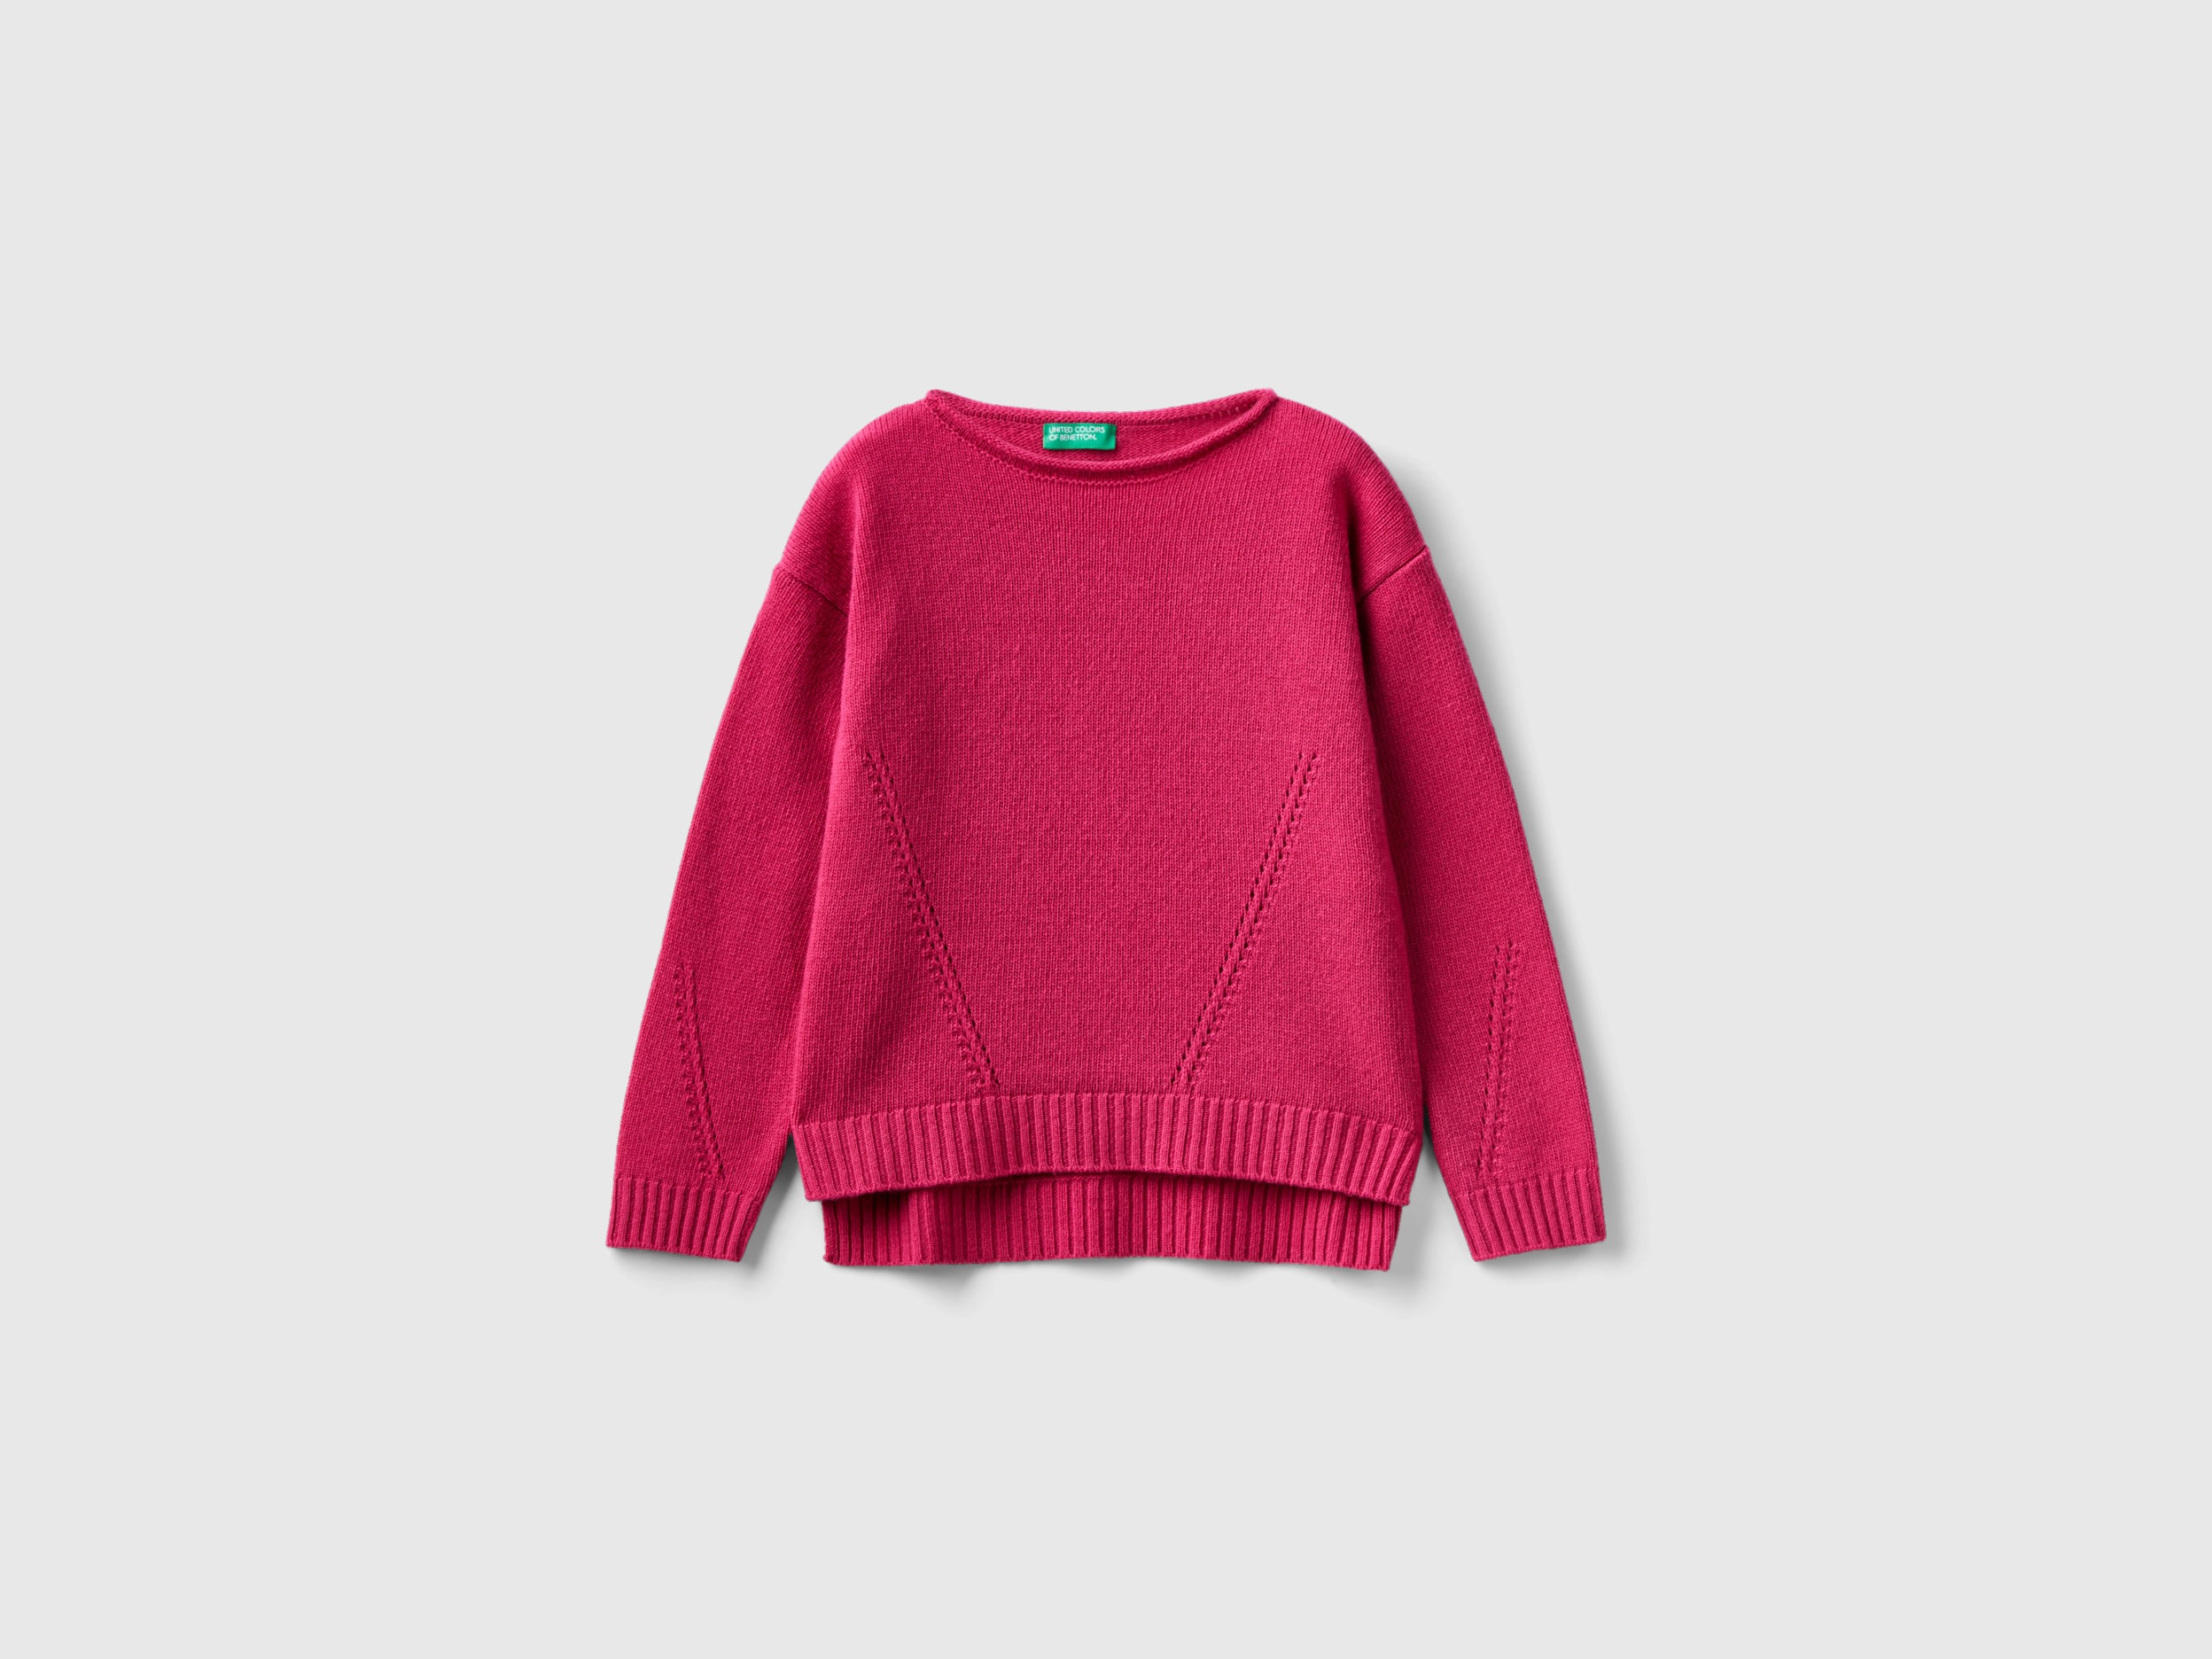 Benetton, Knit Sweater With Playful Stitching, size M, Cyclamen, Kids